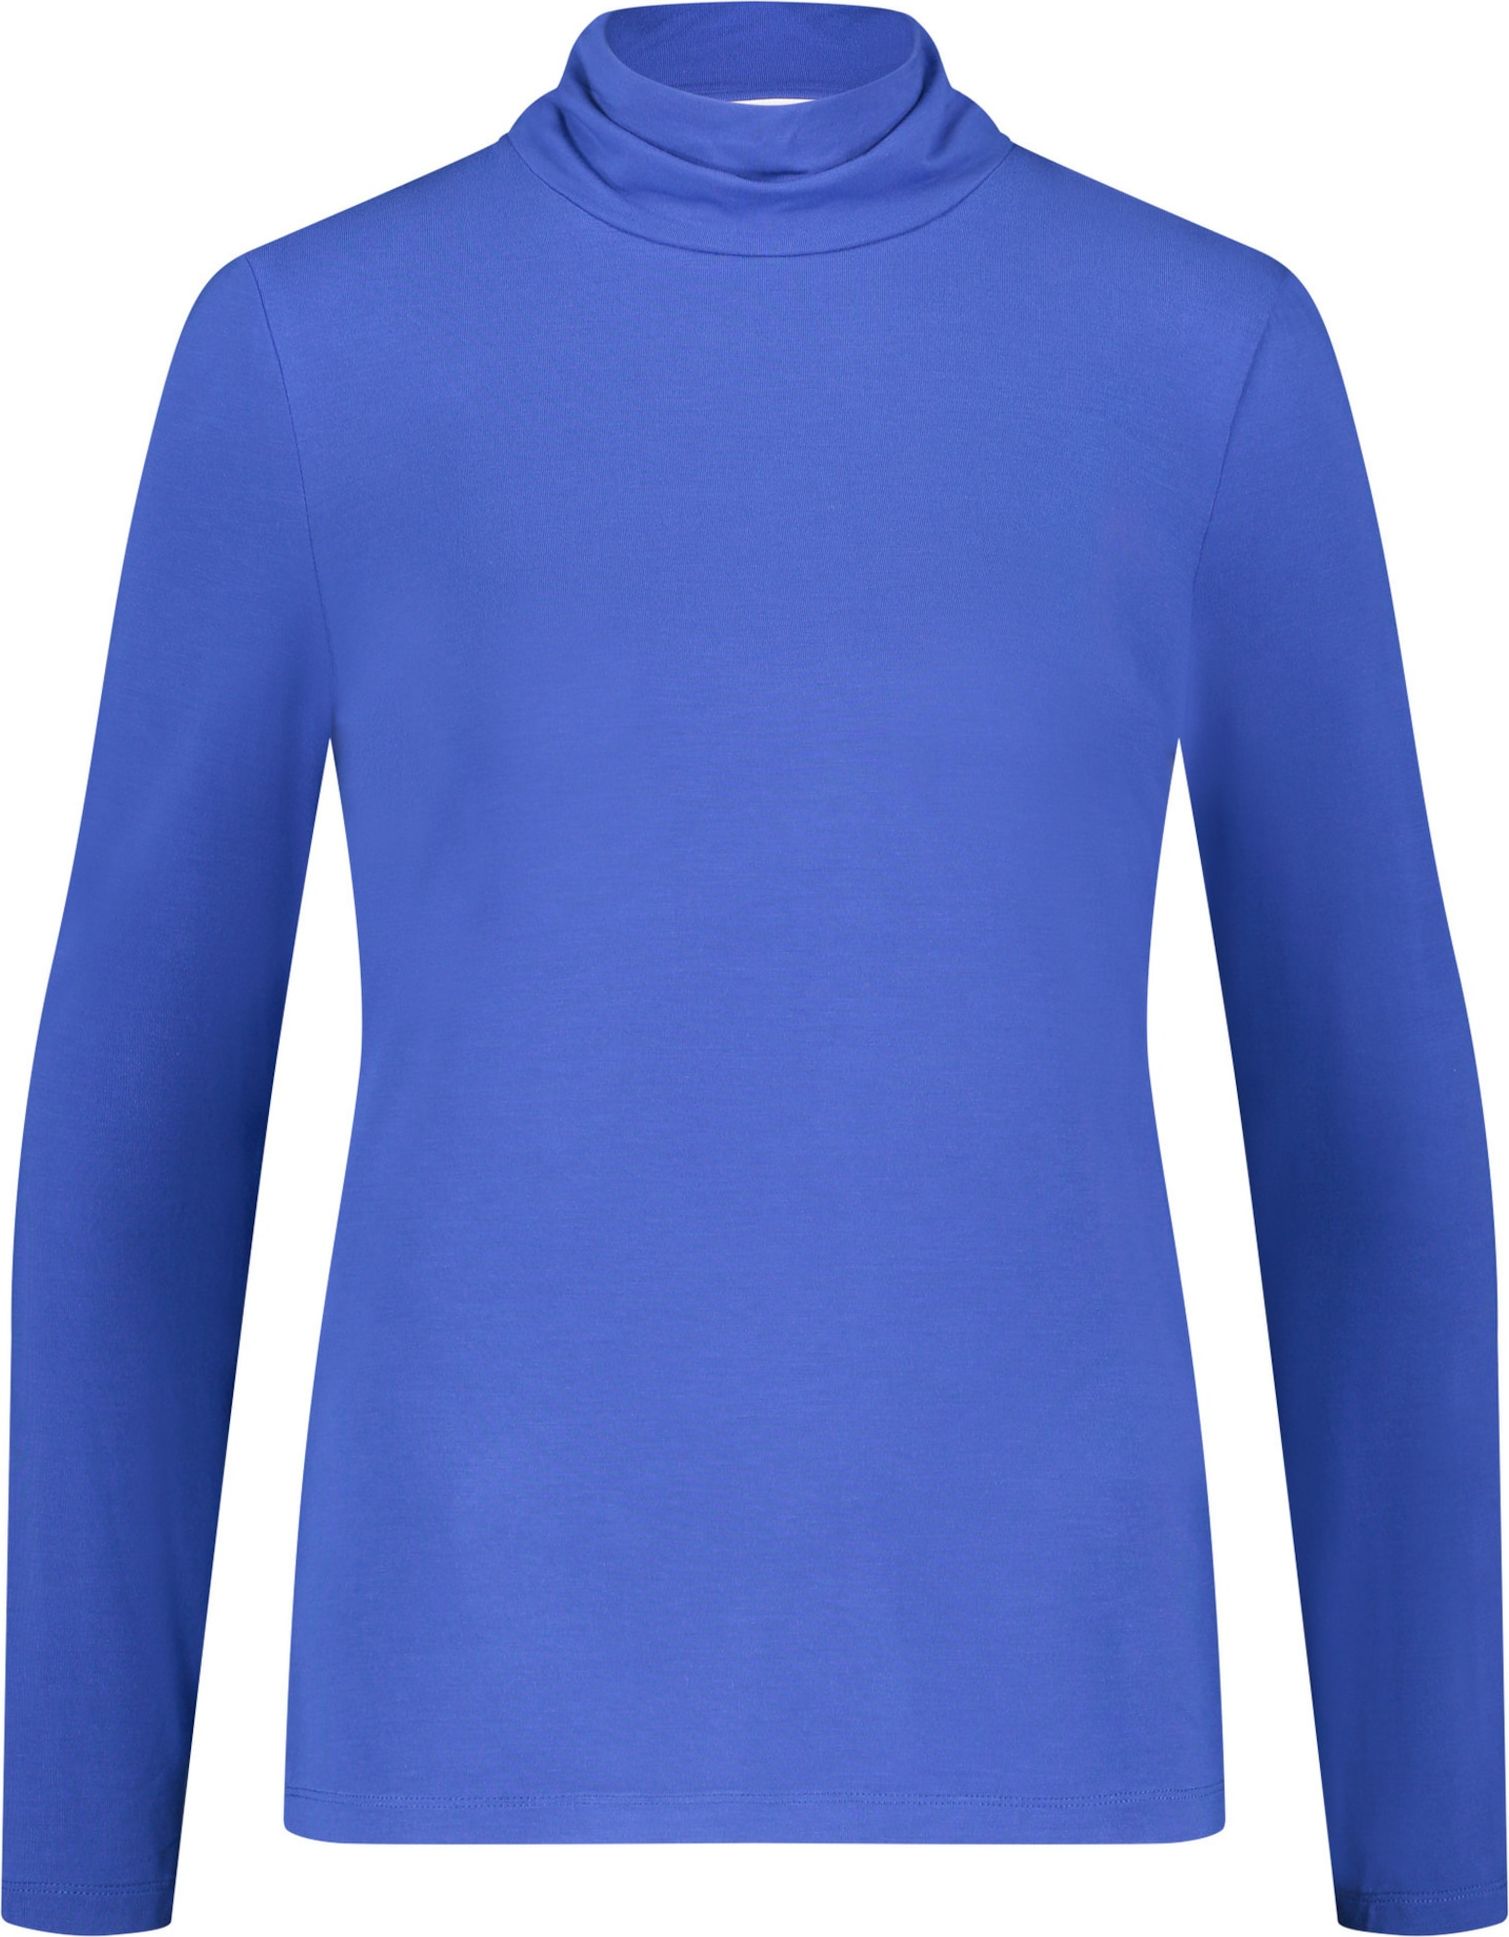 GERRY WEBER Tričko královská modrá